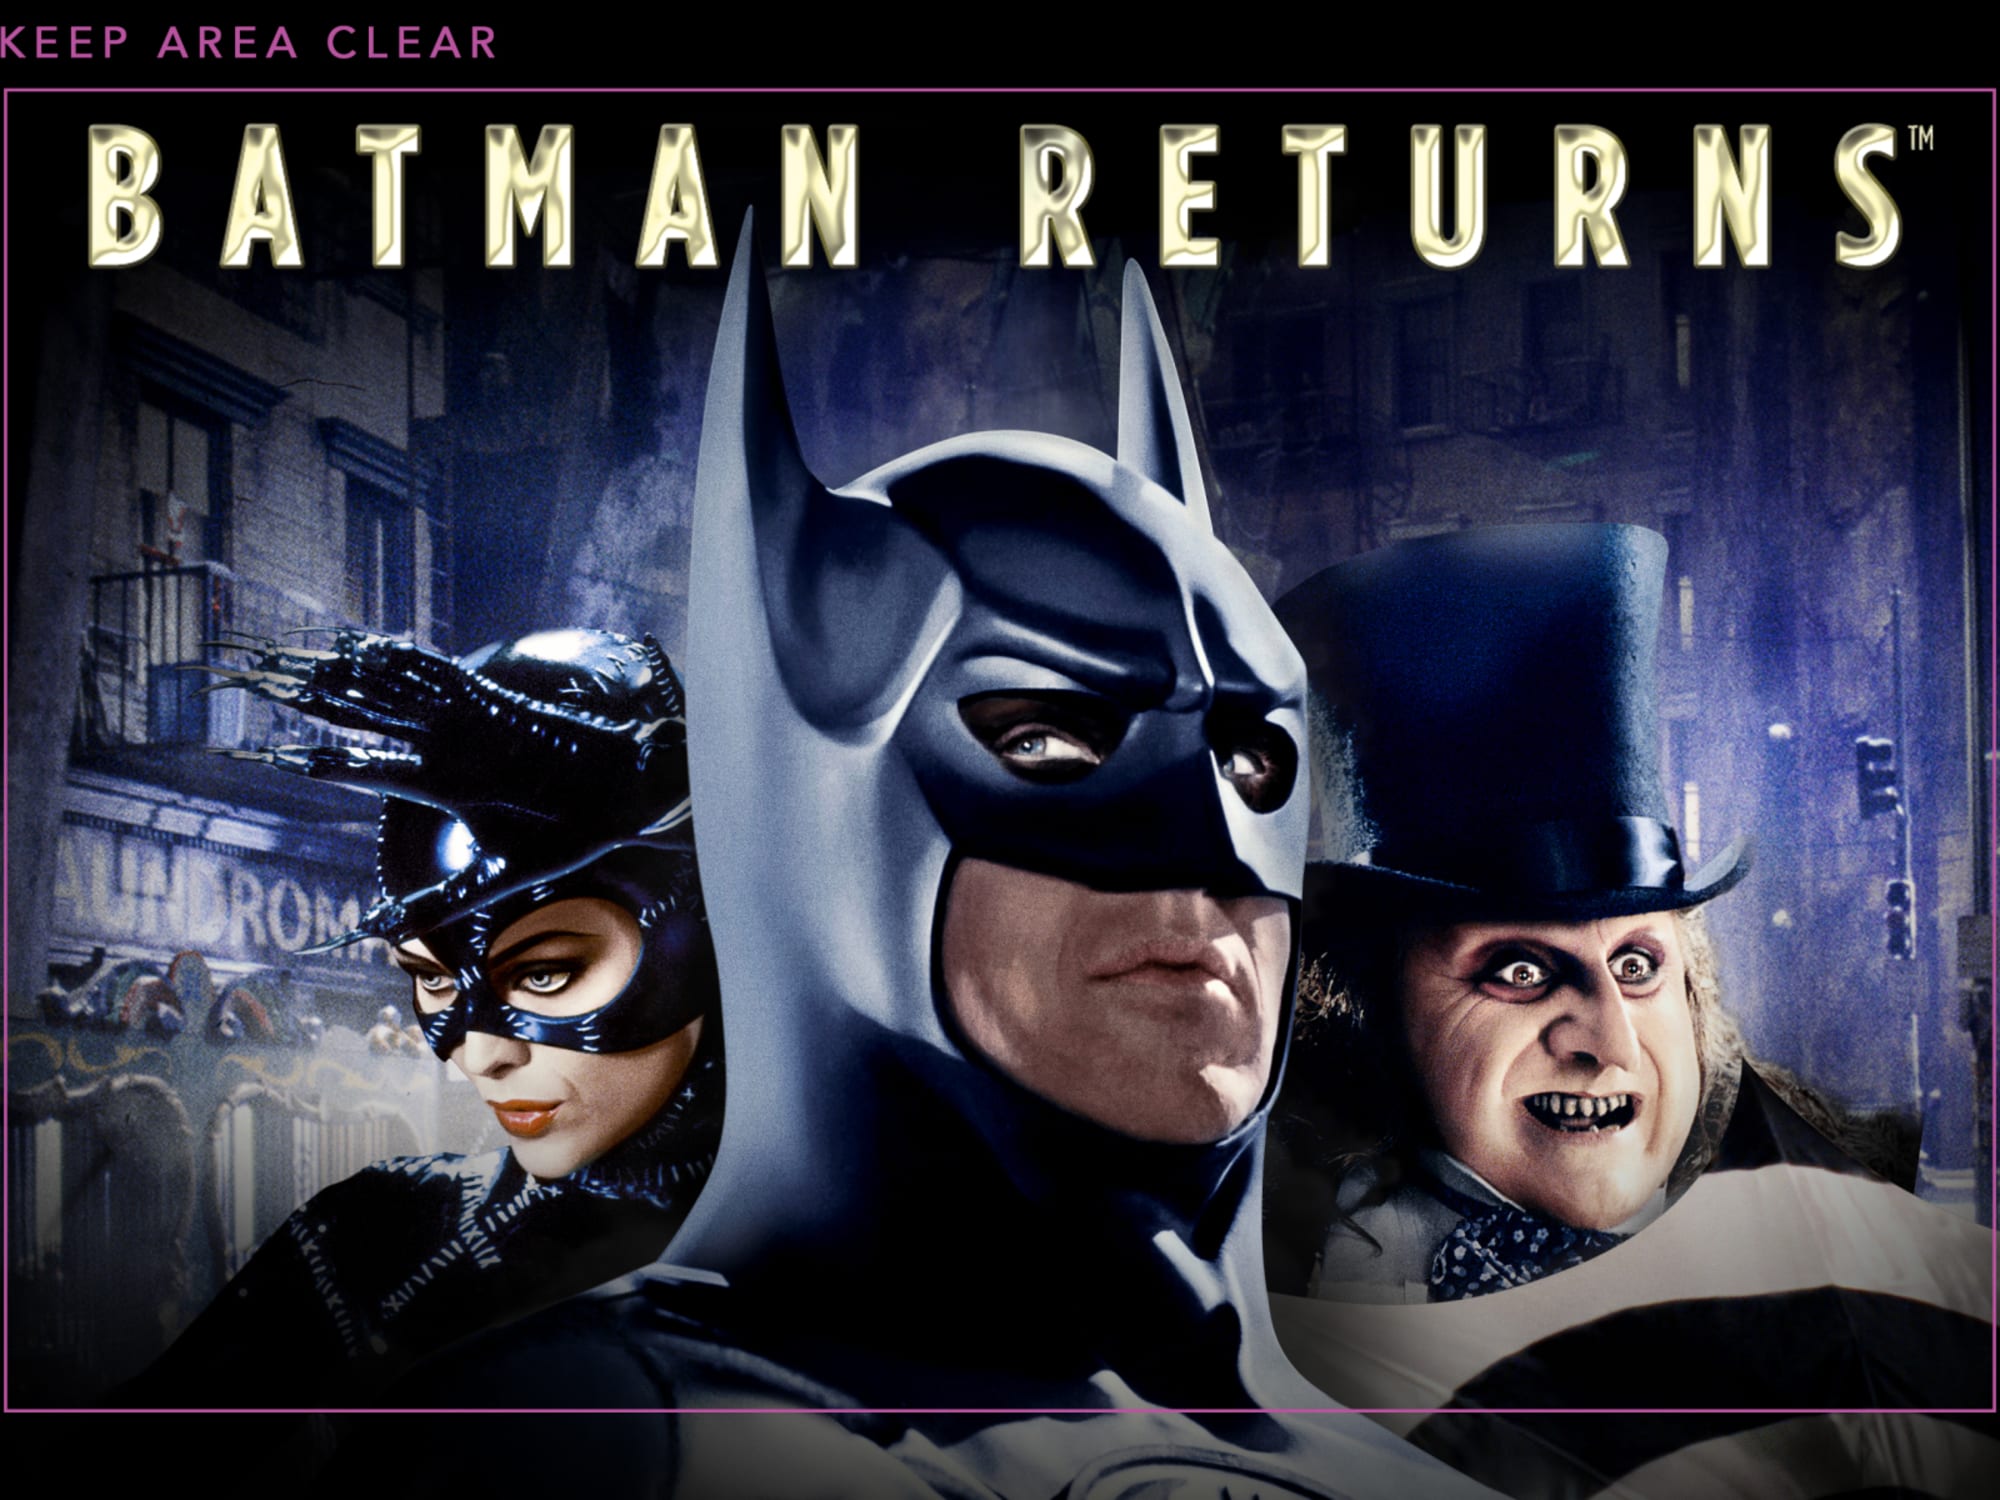 Michael Keaton's Batman may not be the Dark Knight we remember